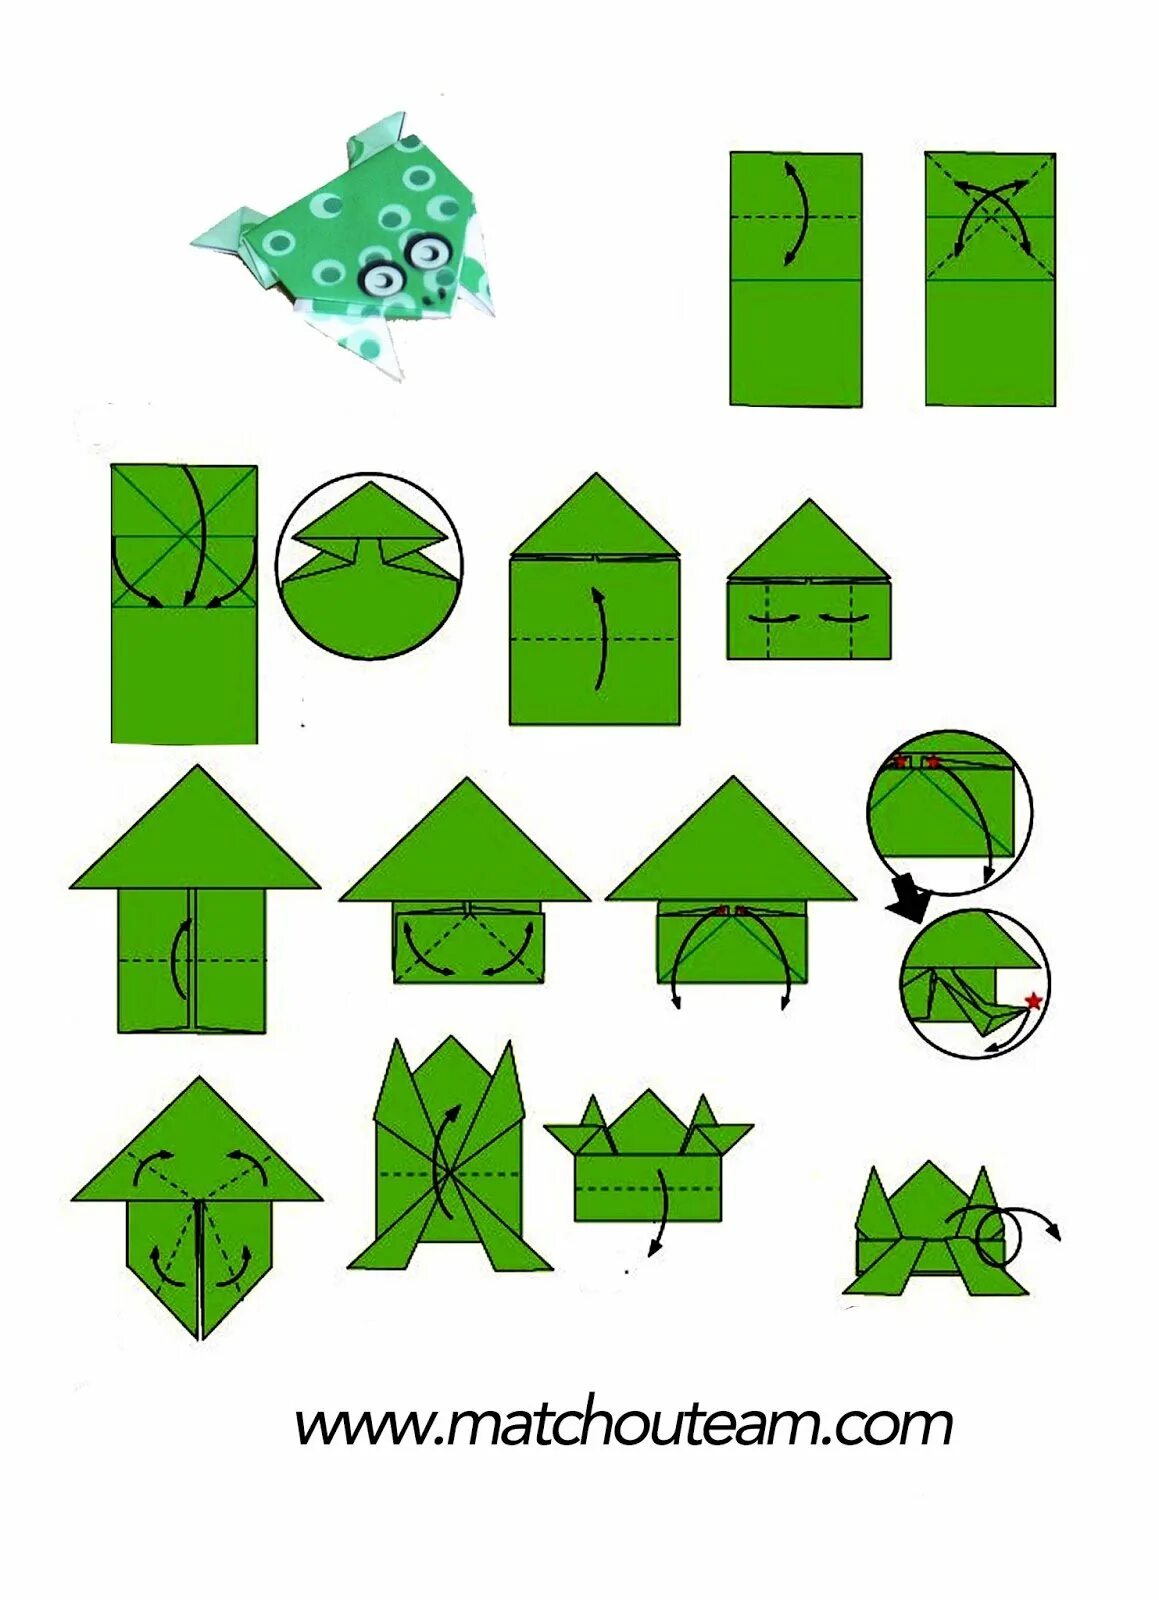 Простые оригами лягушка. Оригами прыгучая лягушка схема. Лягушка оригами из бумаги прыгающая схема для детей. Оригами лягушка прыгающая схема пошагово из бумаги. Лягушка оригами из бумаги схемы для детей простая.